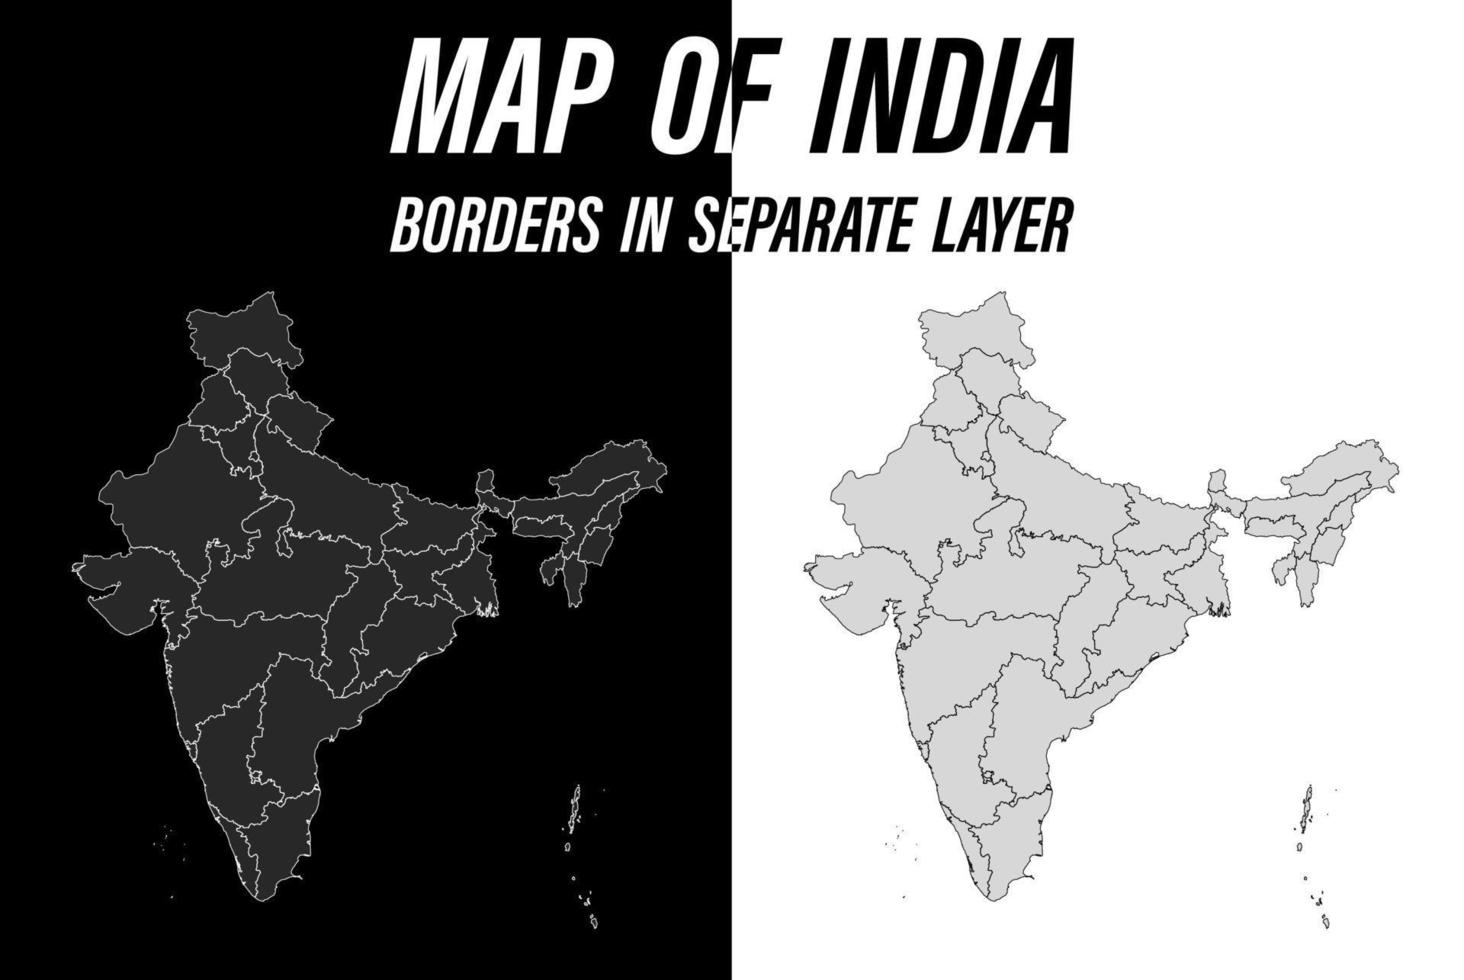 mappa dettagliata dell'india con i confini. vettore in bianco e nero